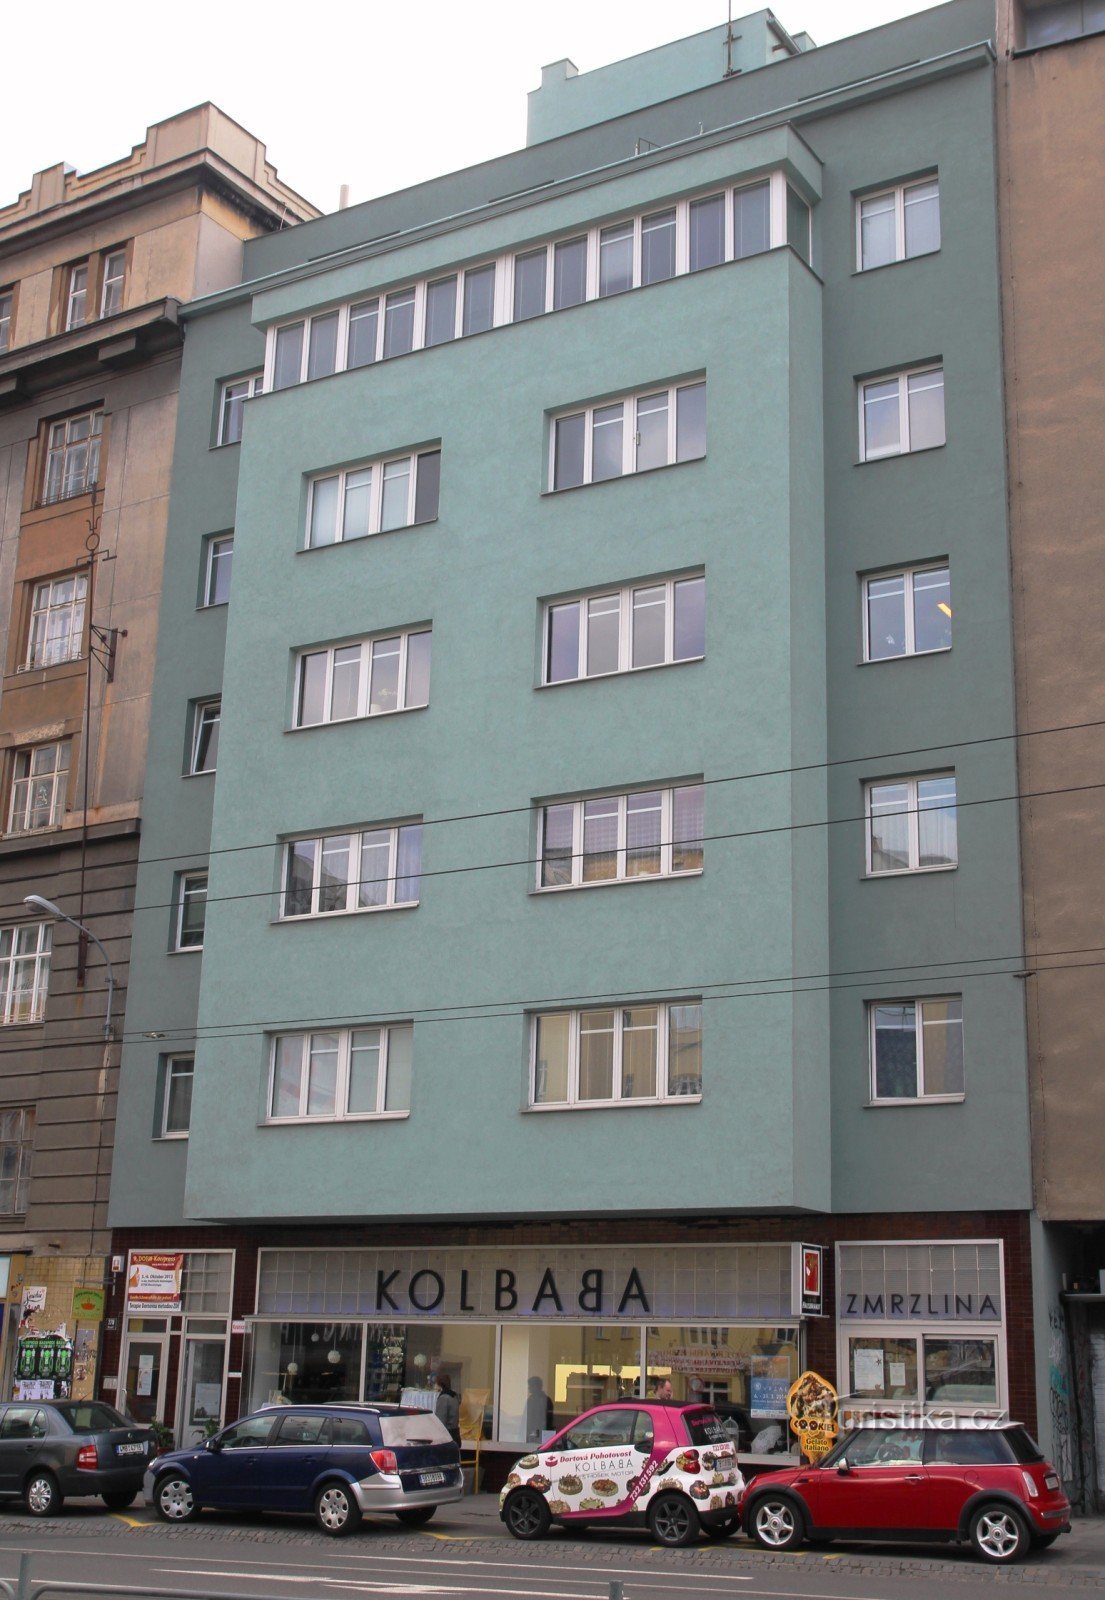 Kolbaba rental house on Kounicová street